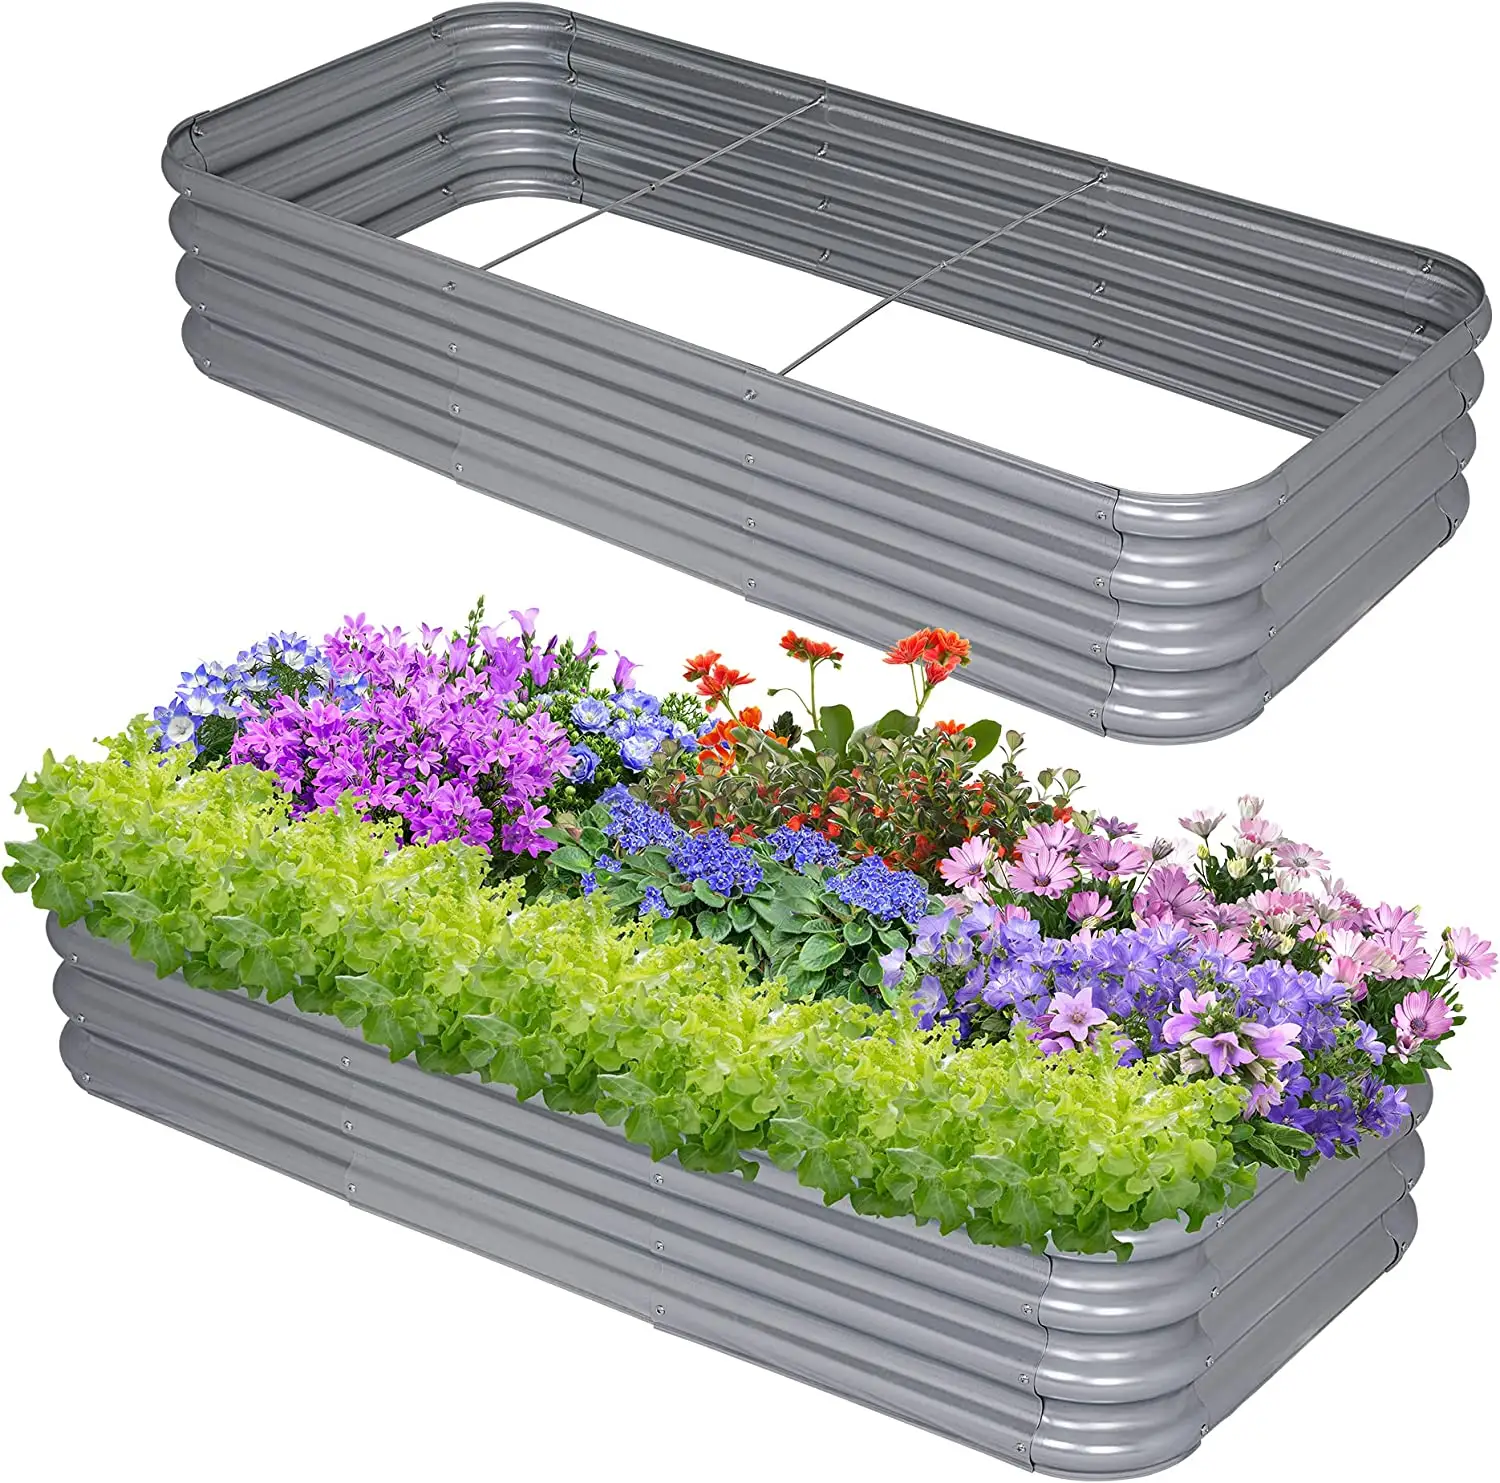 Tempat tidur taman mengangkat galvanis untuk sayuran kotak penanam logam besar Kit baja Herbor bunga